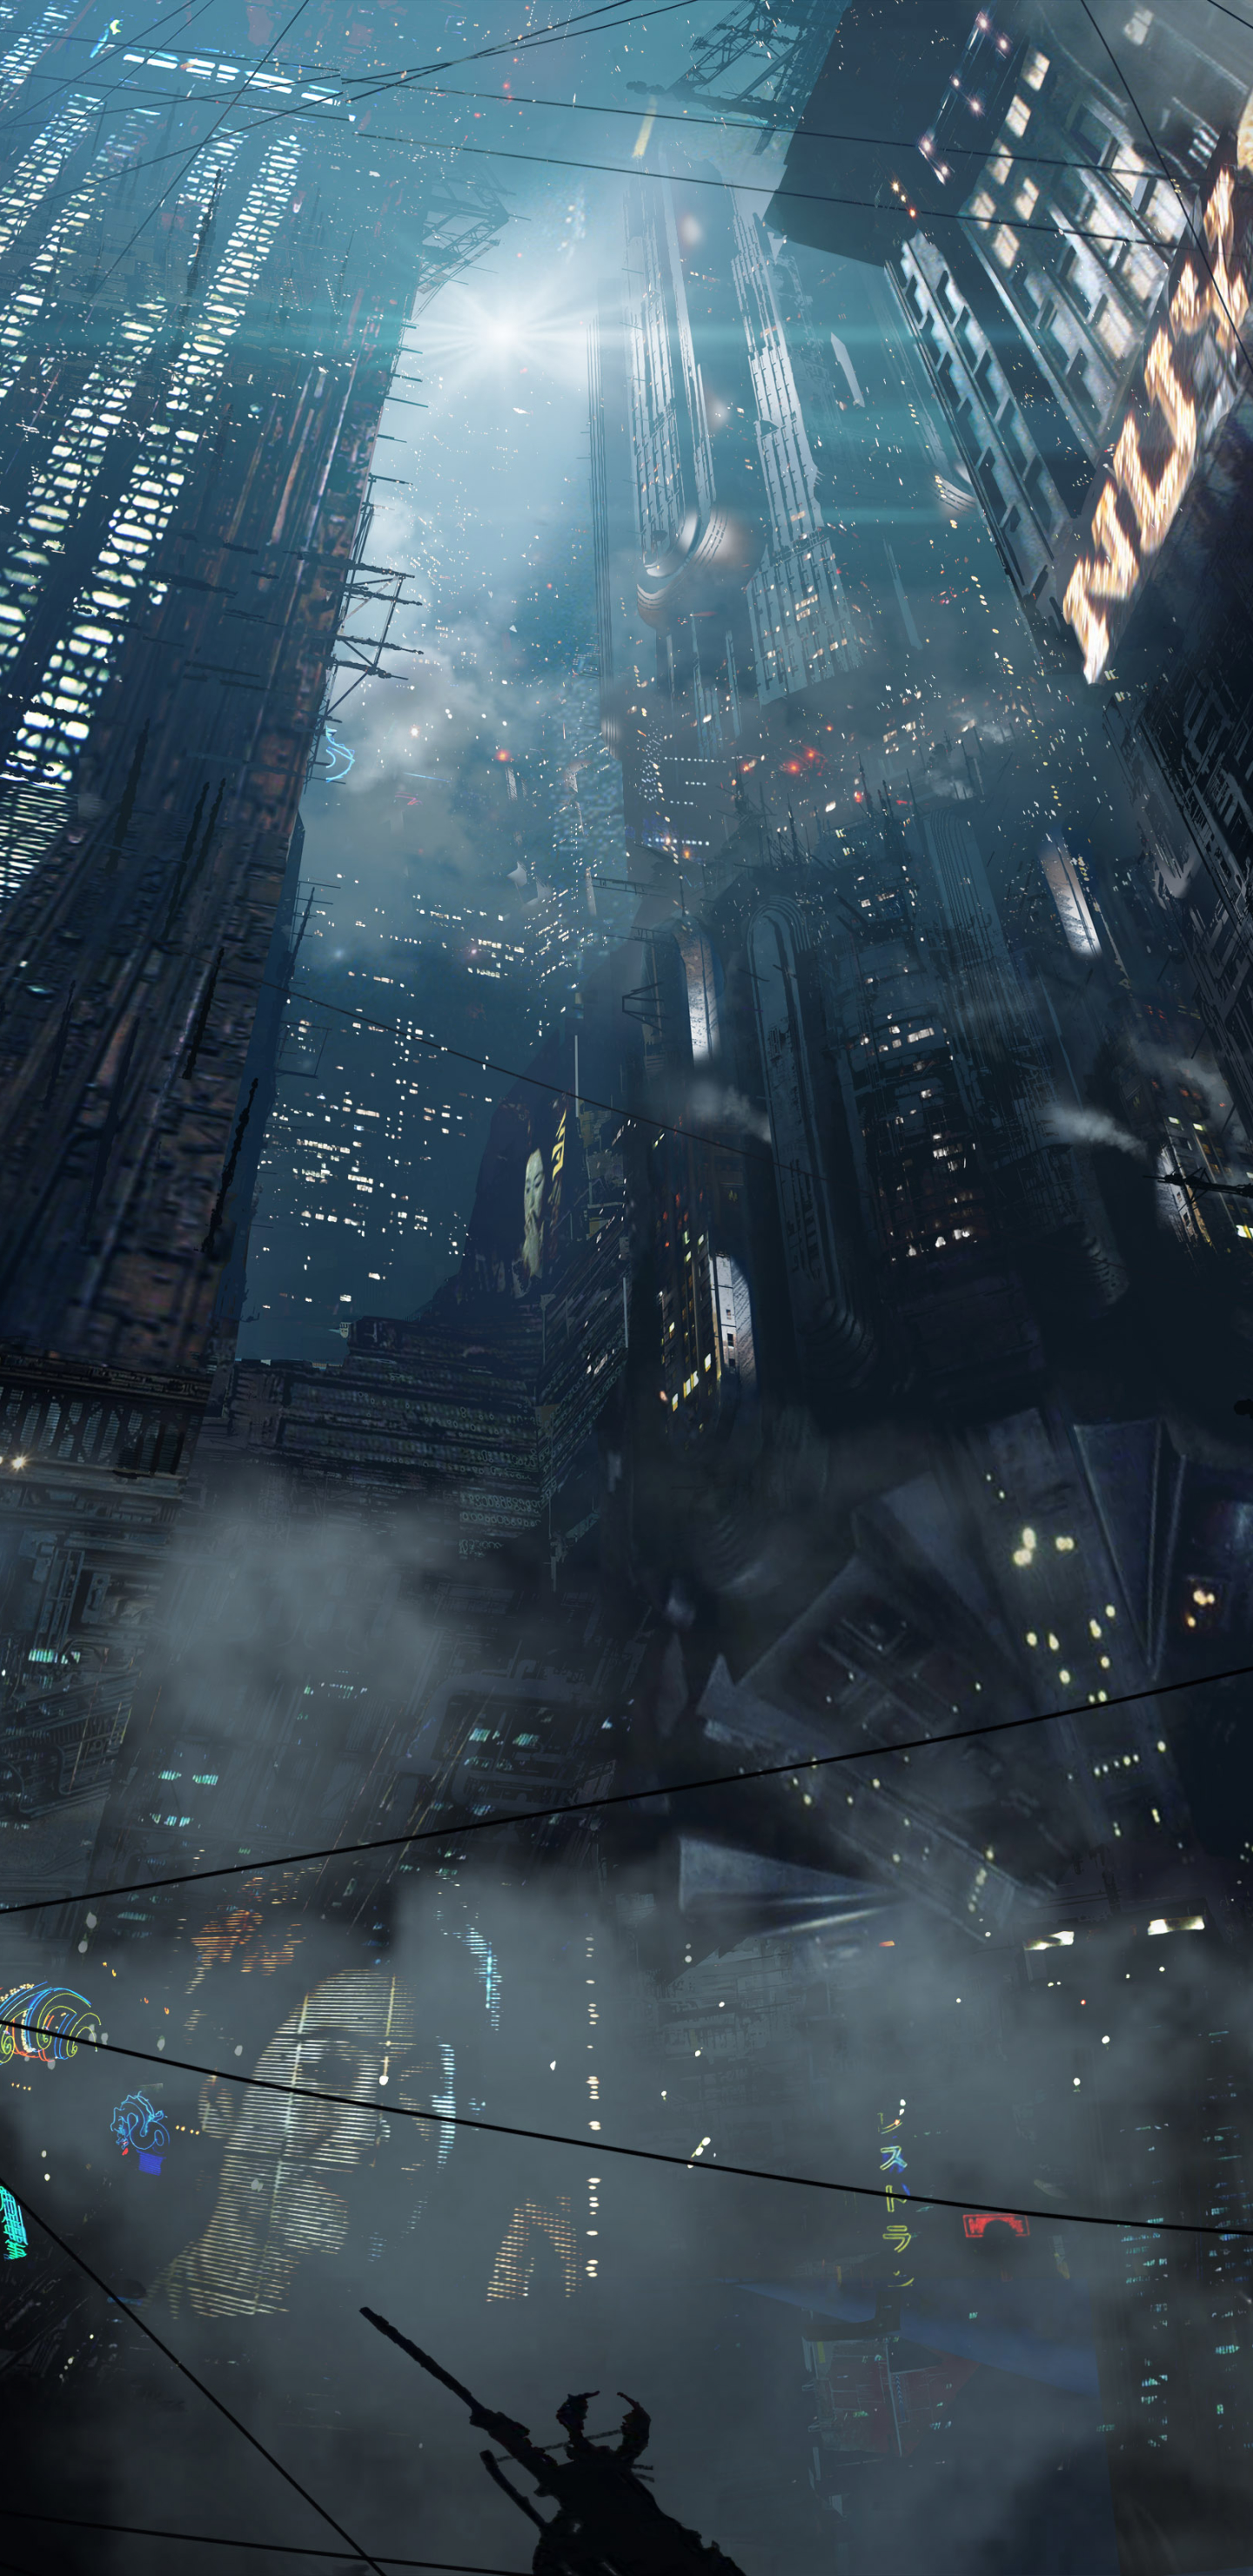 Descarga gratuita de fondo de pantalla para móvil de Ciudad, Rascacielos, Edificio, Futurista, Películas, Blade Runner 2049.